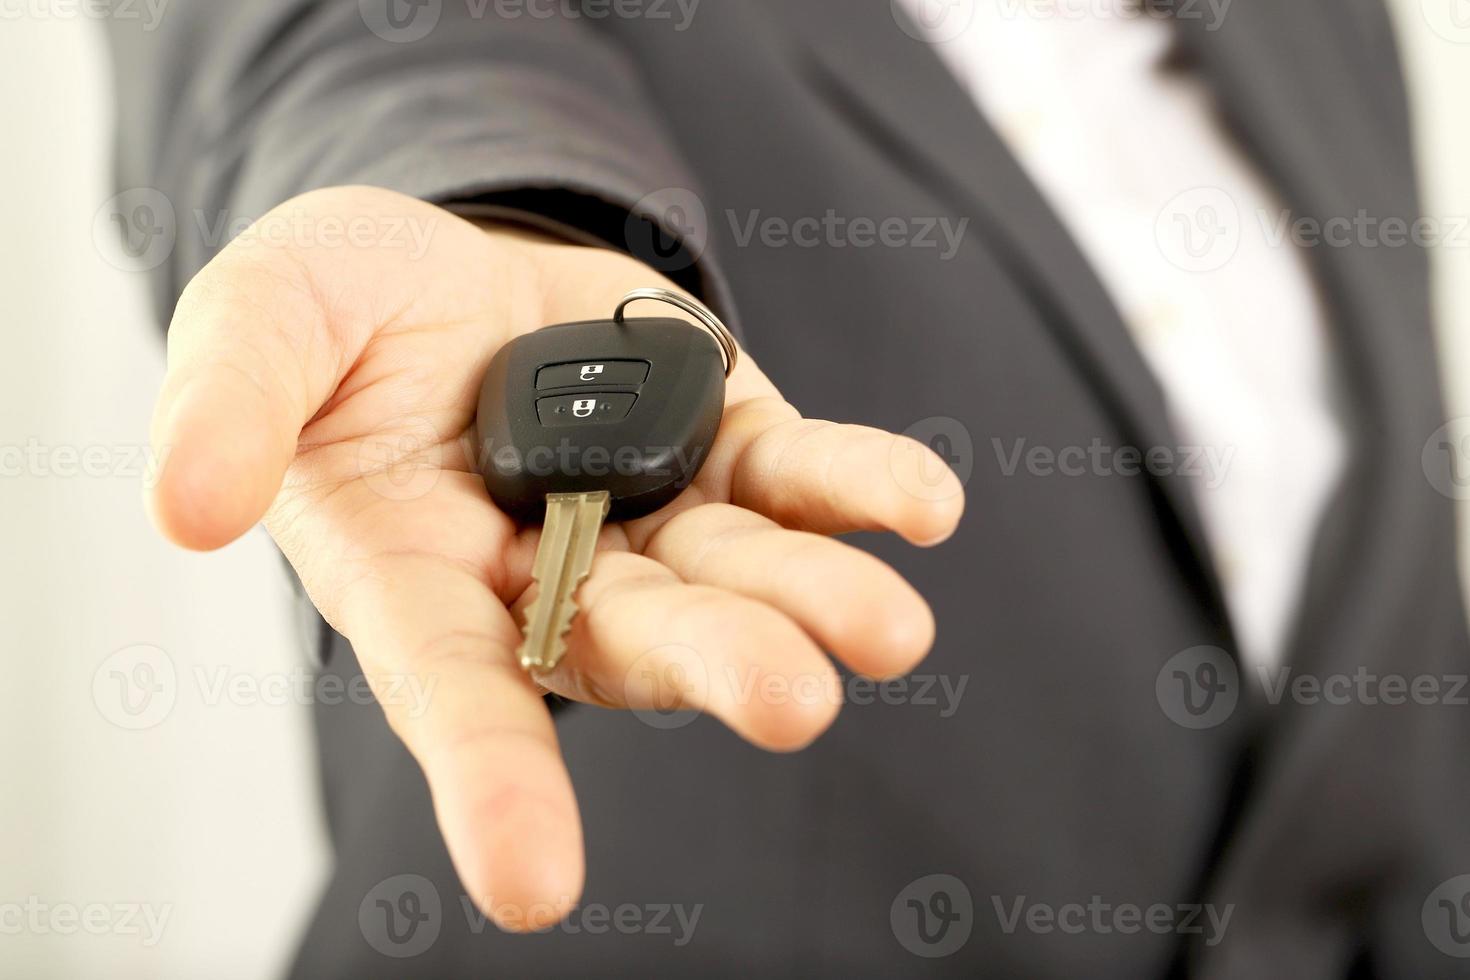 verkoper is draag- de auto sleutels geleverd naar de klant Bij de toonzaal met een laag interesseren bieden. speciaal Promotie foto